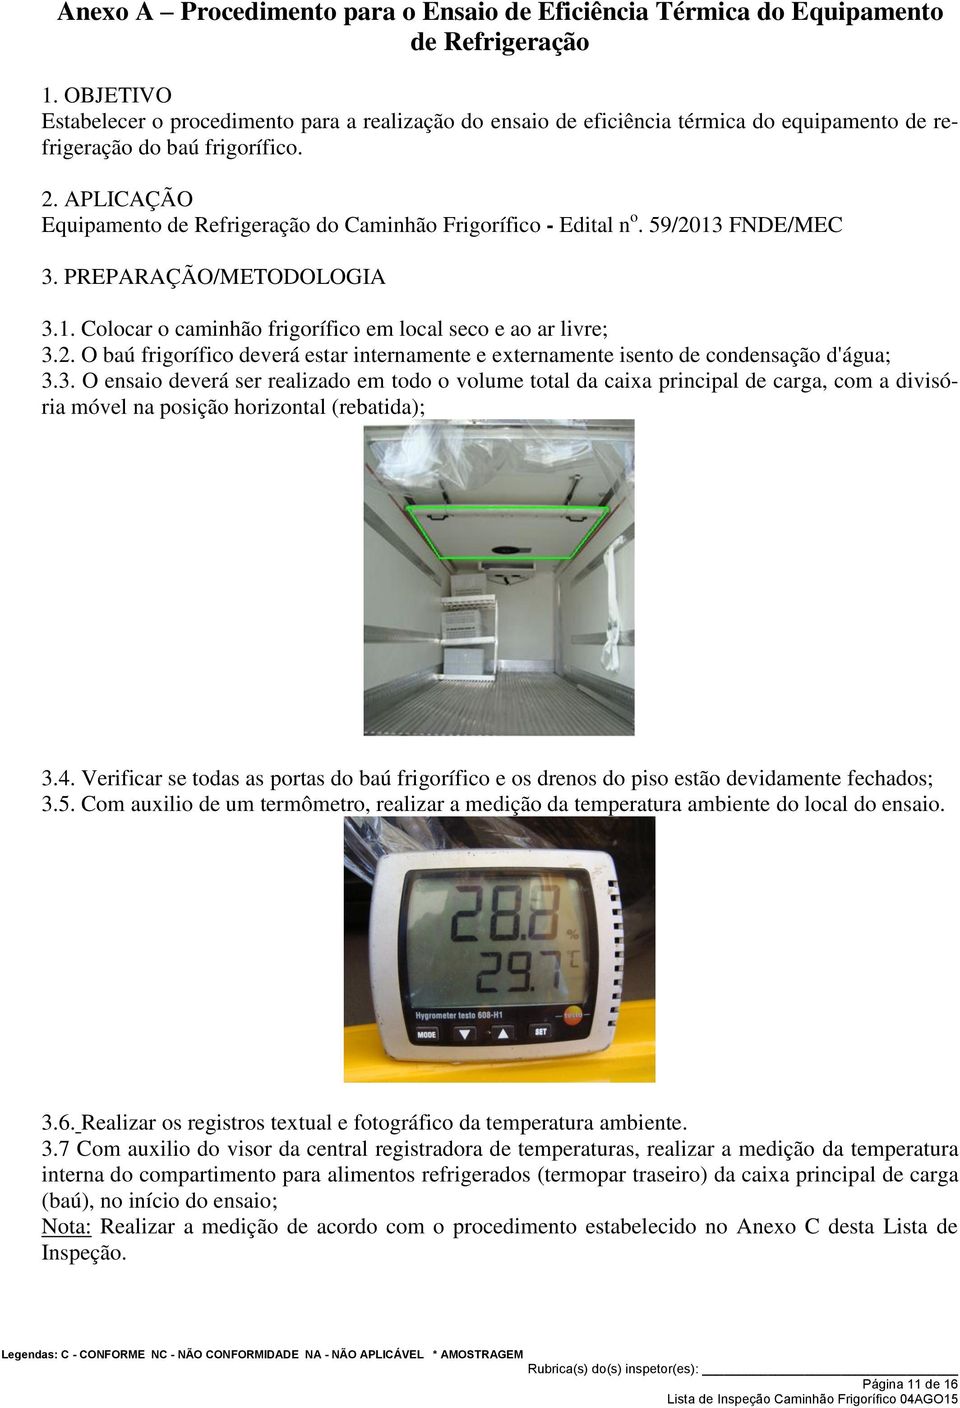 APLICAÇÃO Equipamento de Refrigeração do Caminhão Frigorífico - Edital n o. 59/2013 FNDE/MEC 3. PREPARAÇÃO/METODOLOGIA 3.1. Colocar o caminhão frigorífico em local seco e ao ar livre; 3.2. O baú frigorífico deverá estar internamente e externamente isento de condensação d'água; 3.